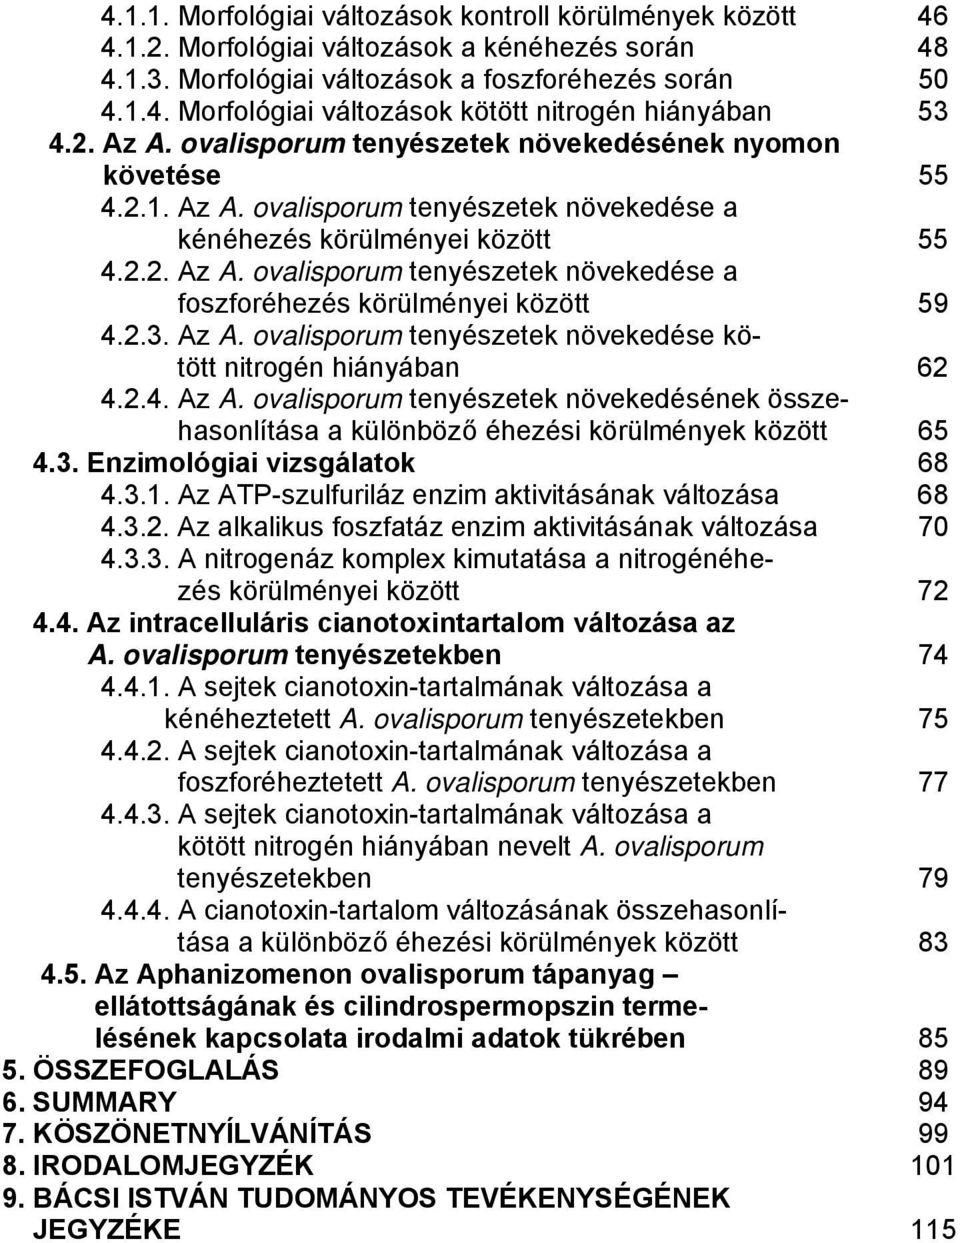 2.3. Az A. ovalisporum tenyészetek növekedése kötött nitrogén hiányában 62 4.2.4. Az A. ovalisporum tenyészetek növekedésének összehasonlítása a különböző éhezési körülmények között 65 4.3. Enzimológiai vizsgálatok 68 4.